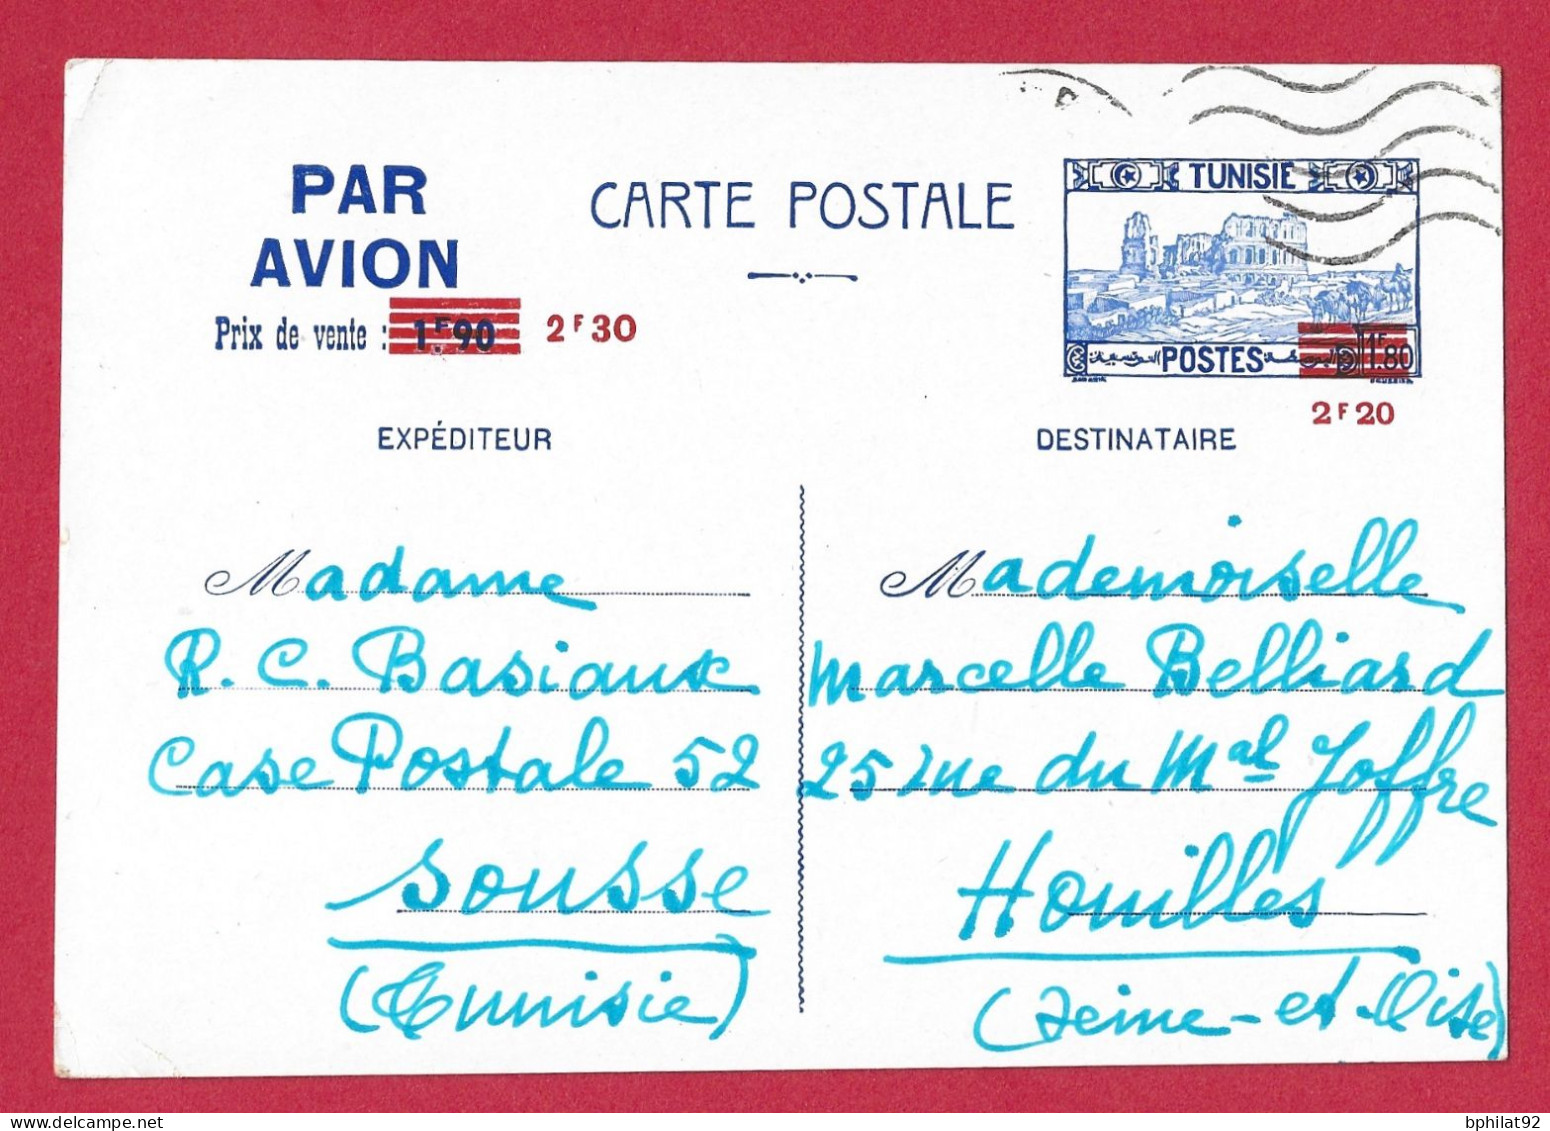 !!! TUNISIE, ENTIER POSTAL PAR AVION DE SOUSSE POUR LA FRANCE D'AVRIL 1942 - Airmail